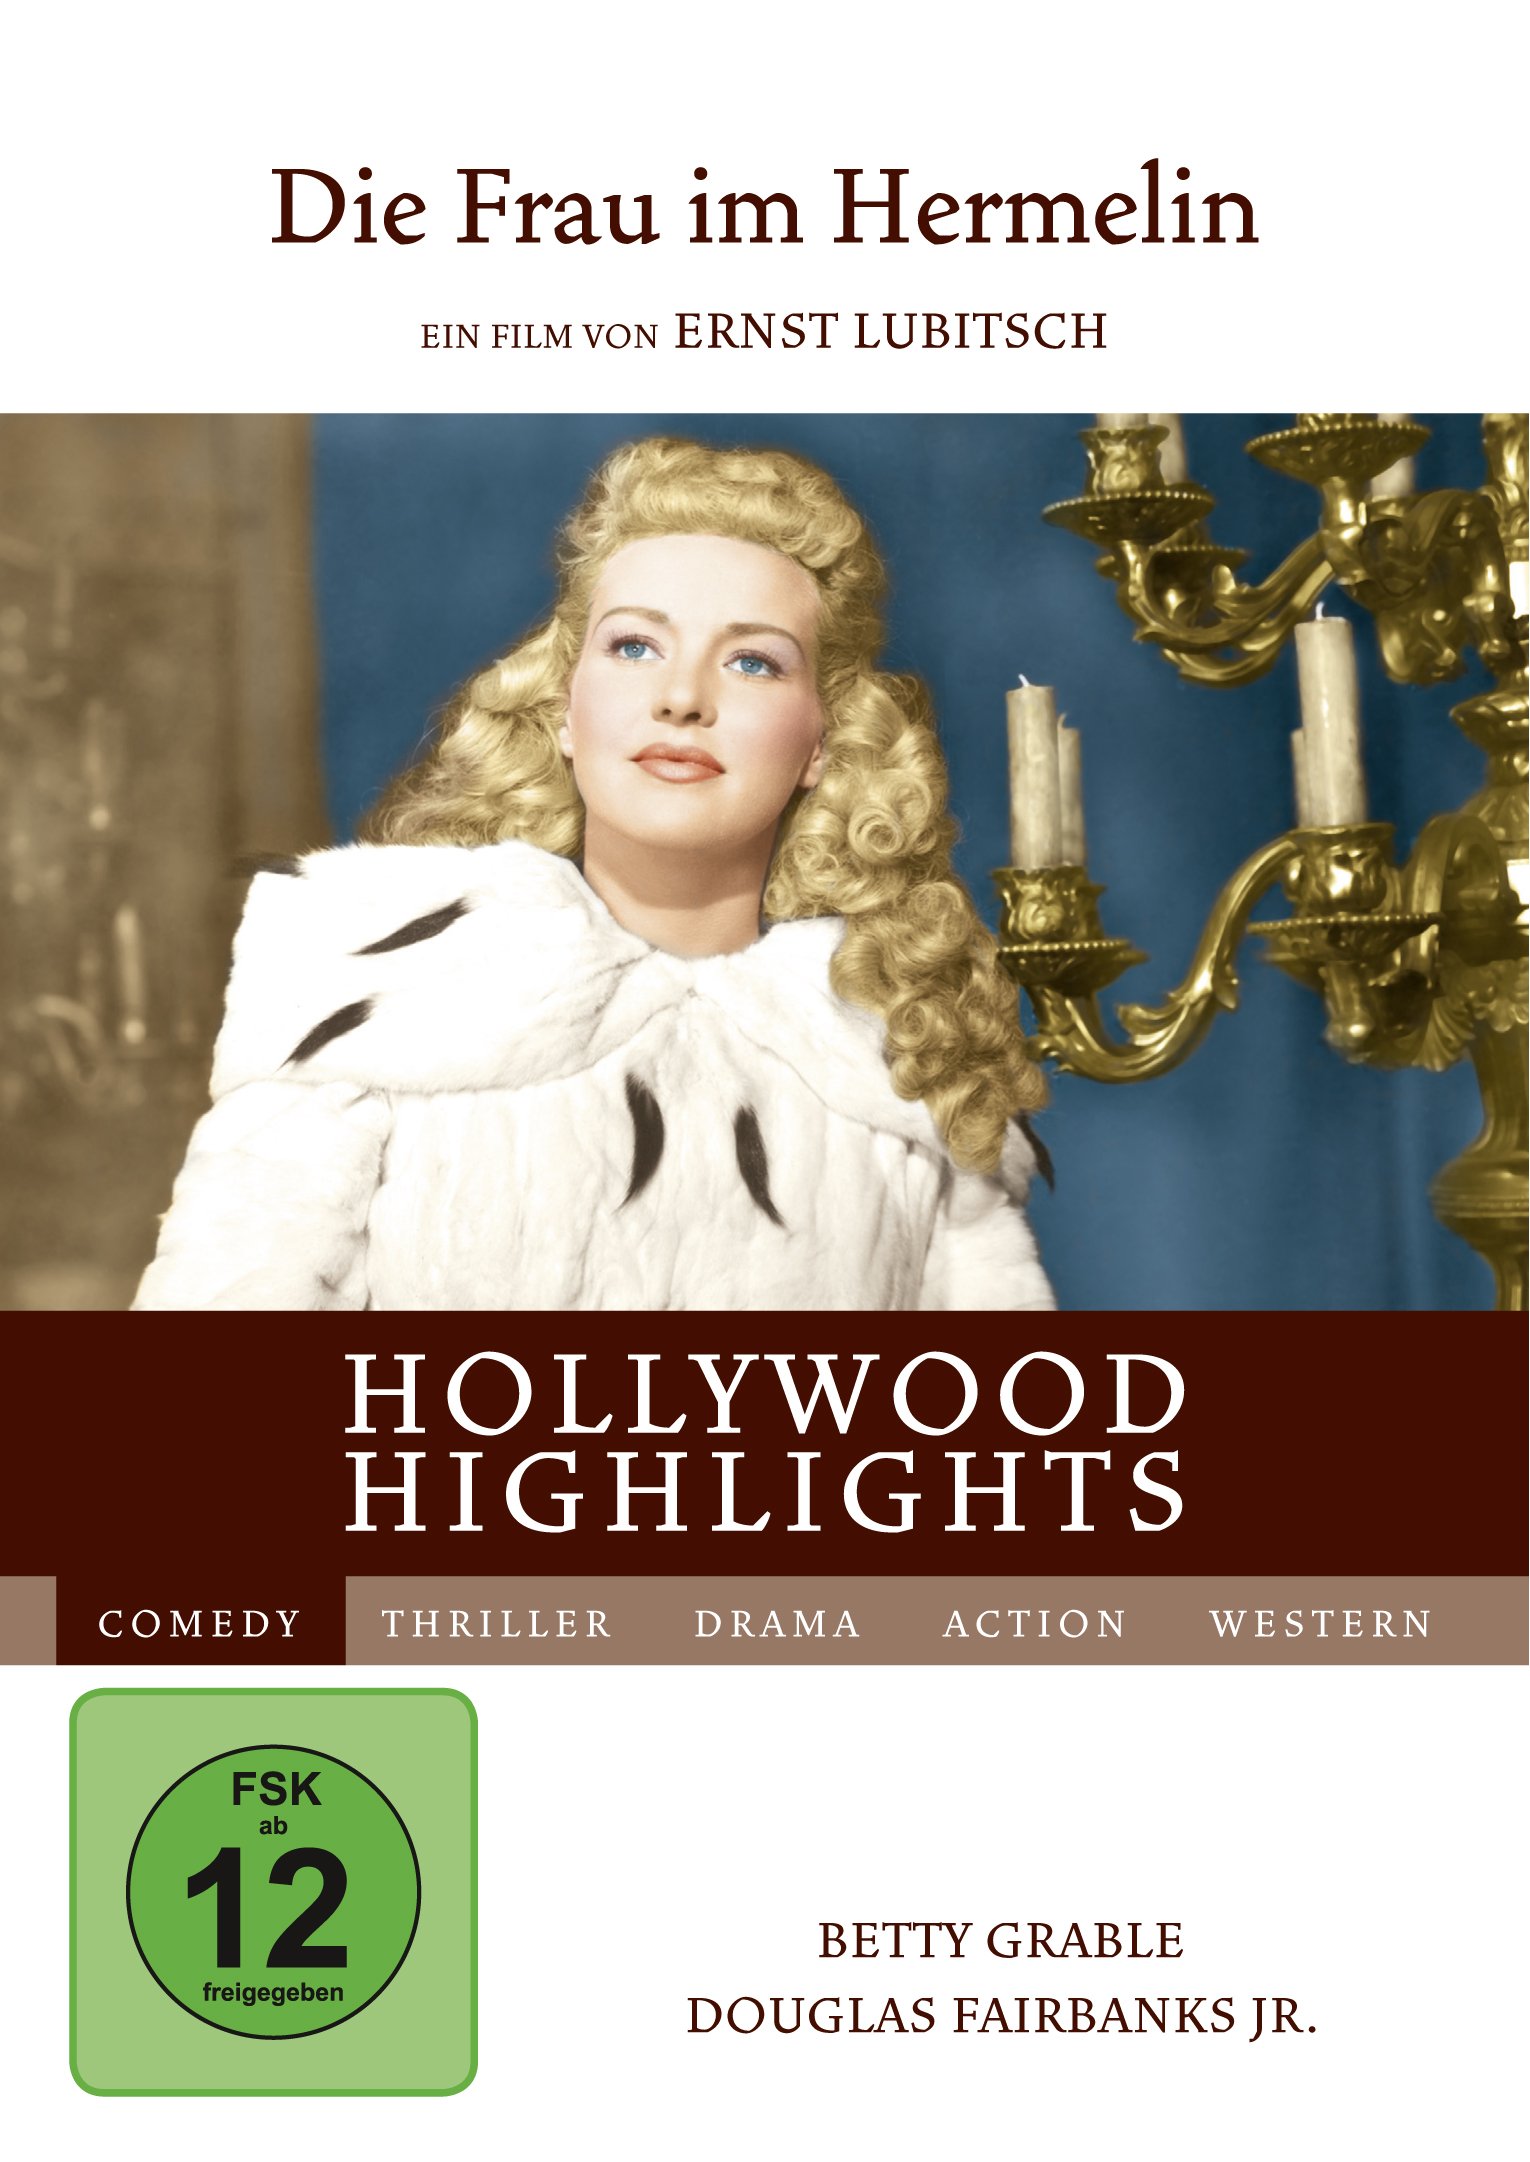 Die Frau im Hermelin - Hollywood Highlights